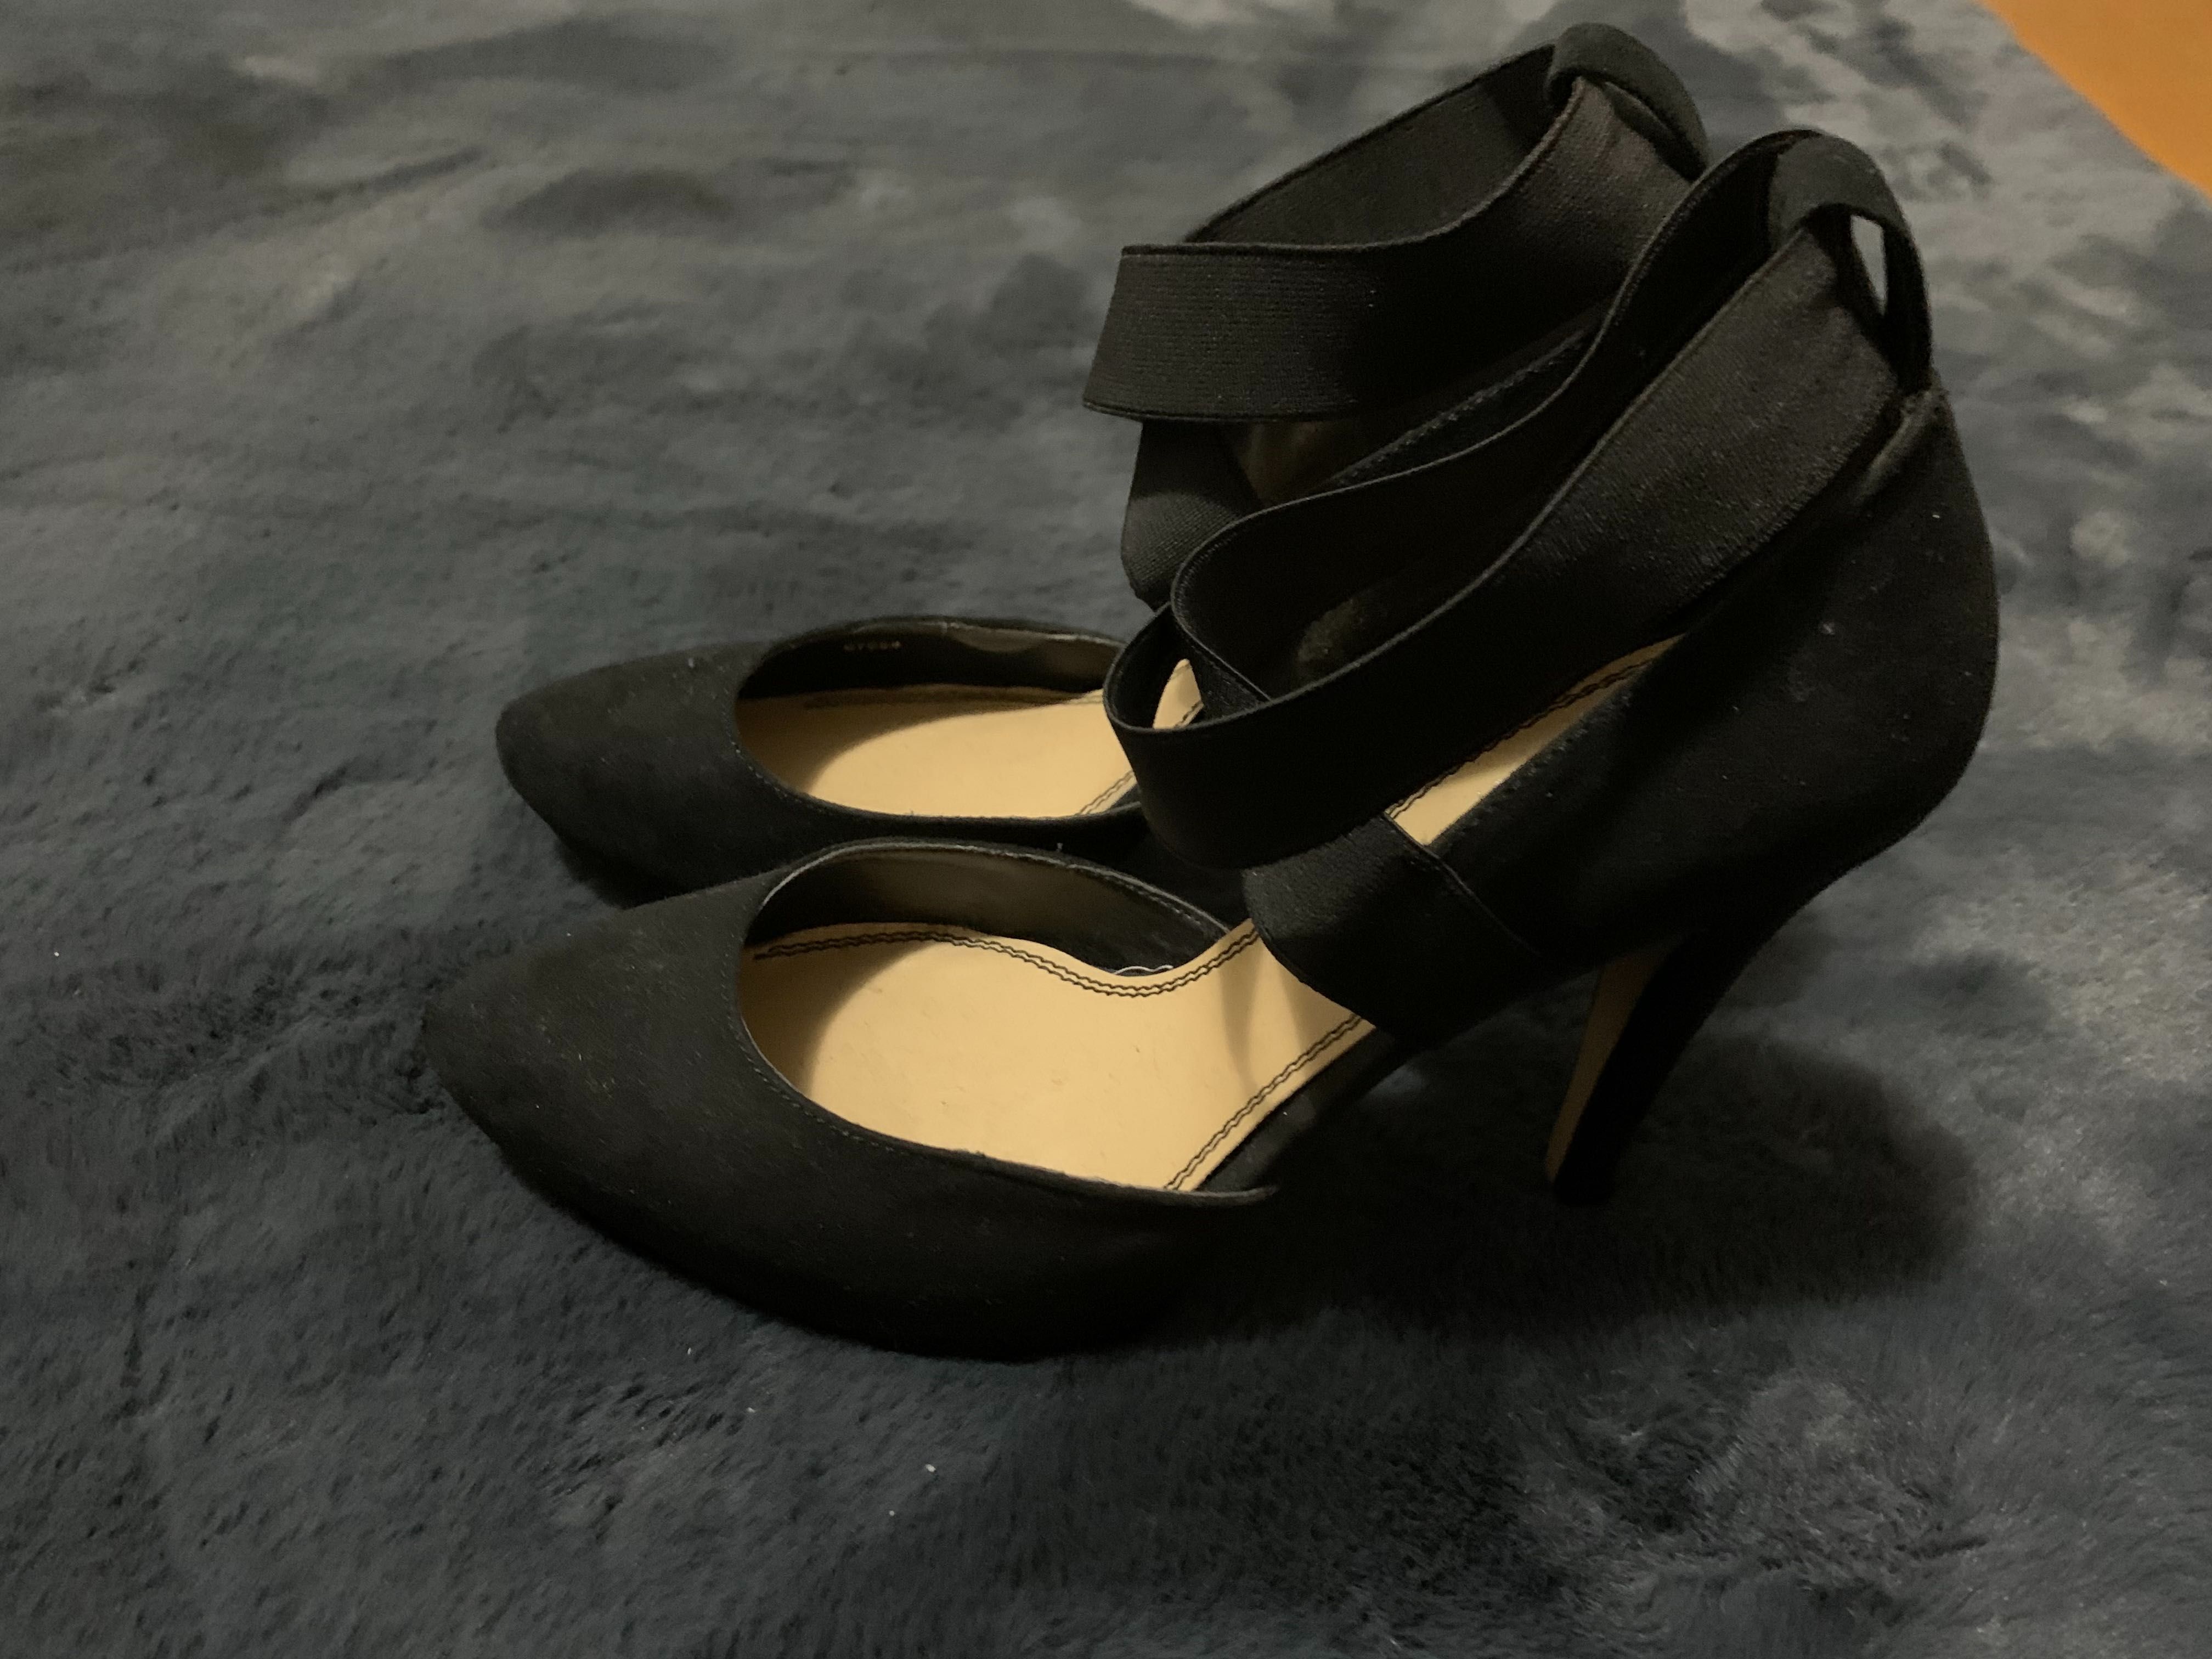 Sapatos MARYPAZ, pretos tamanho 38